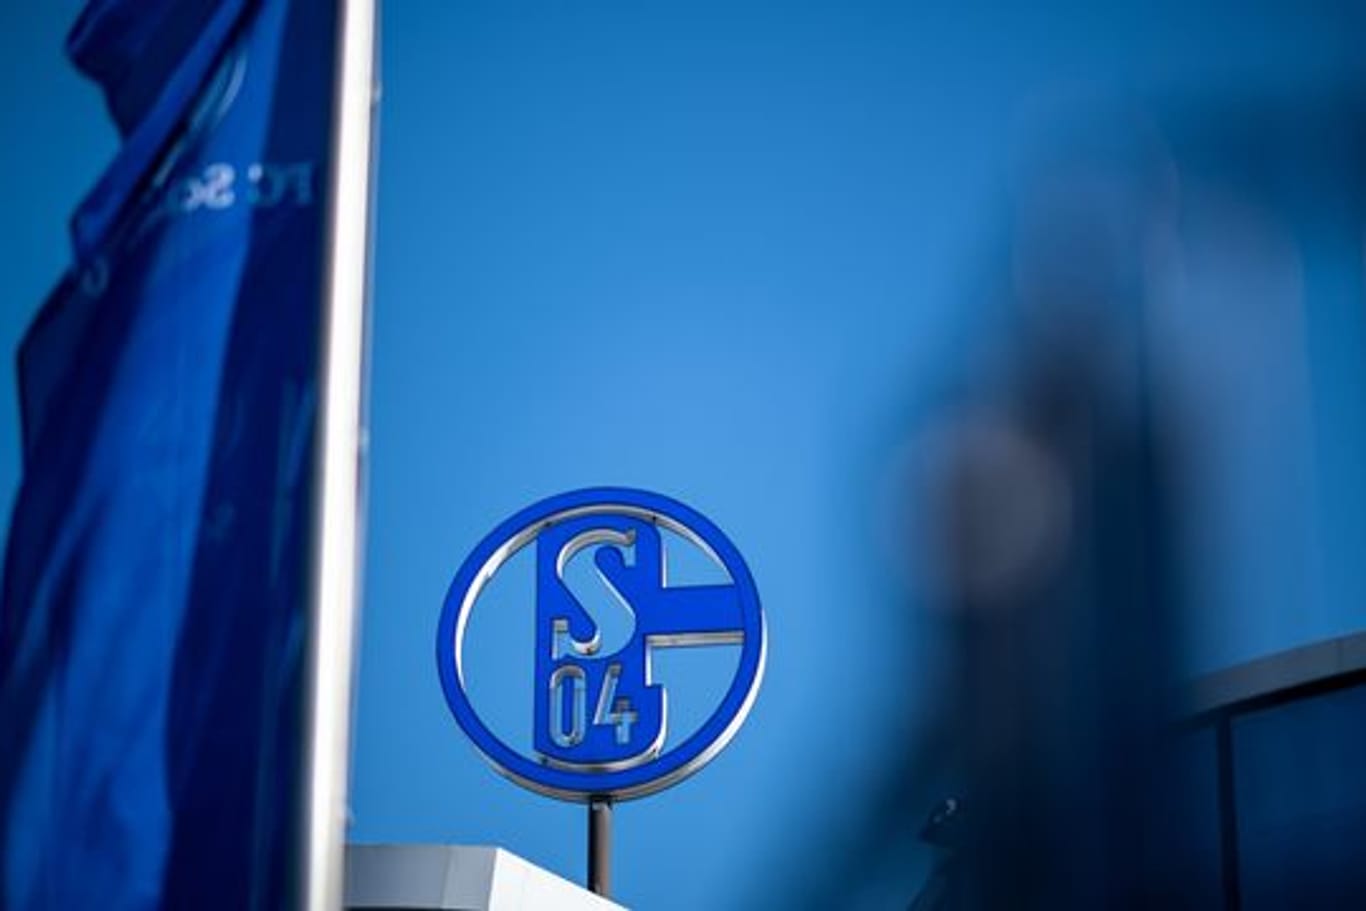 Medienberichten zufolge soll das Wohnungsunternehmen Vivawest neuer Sponsor des Fußball-Zweitligisten FC Schalke 04 werden.